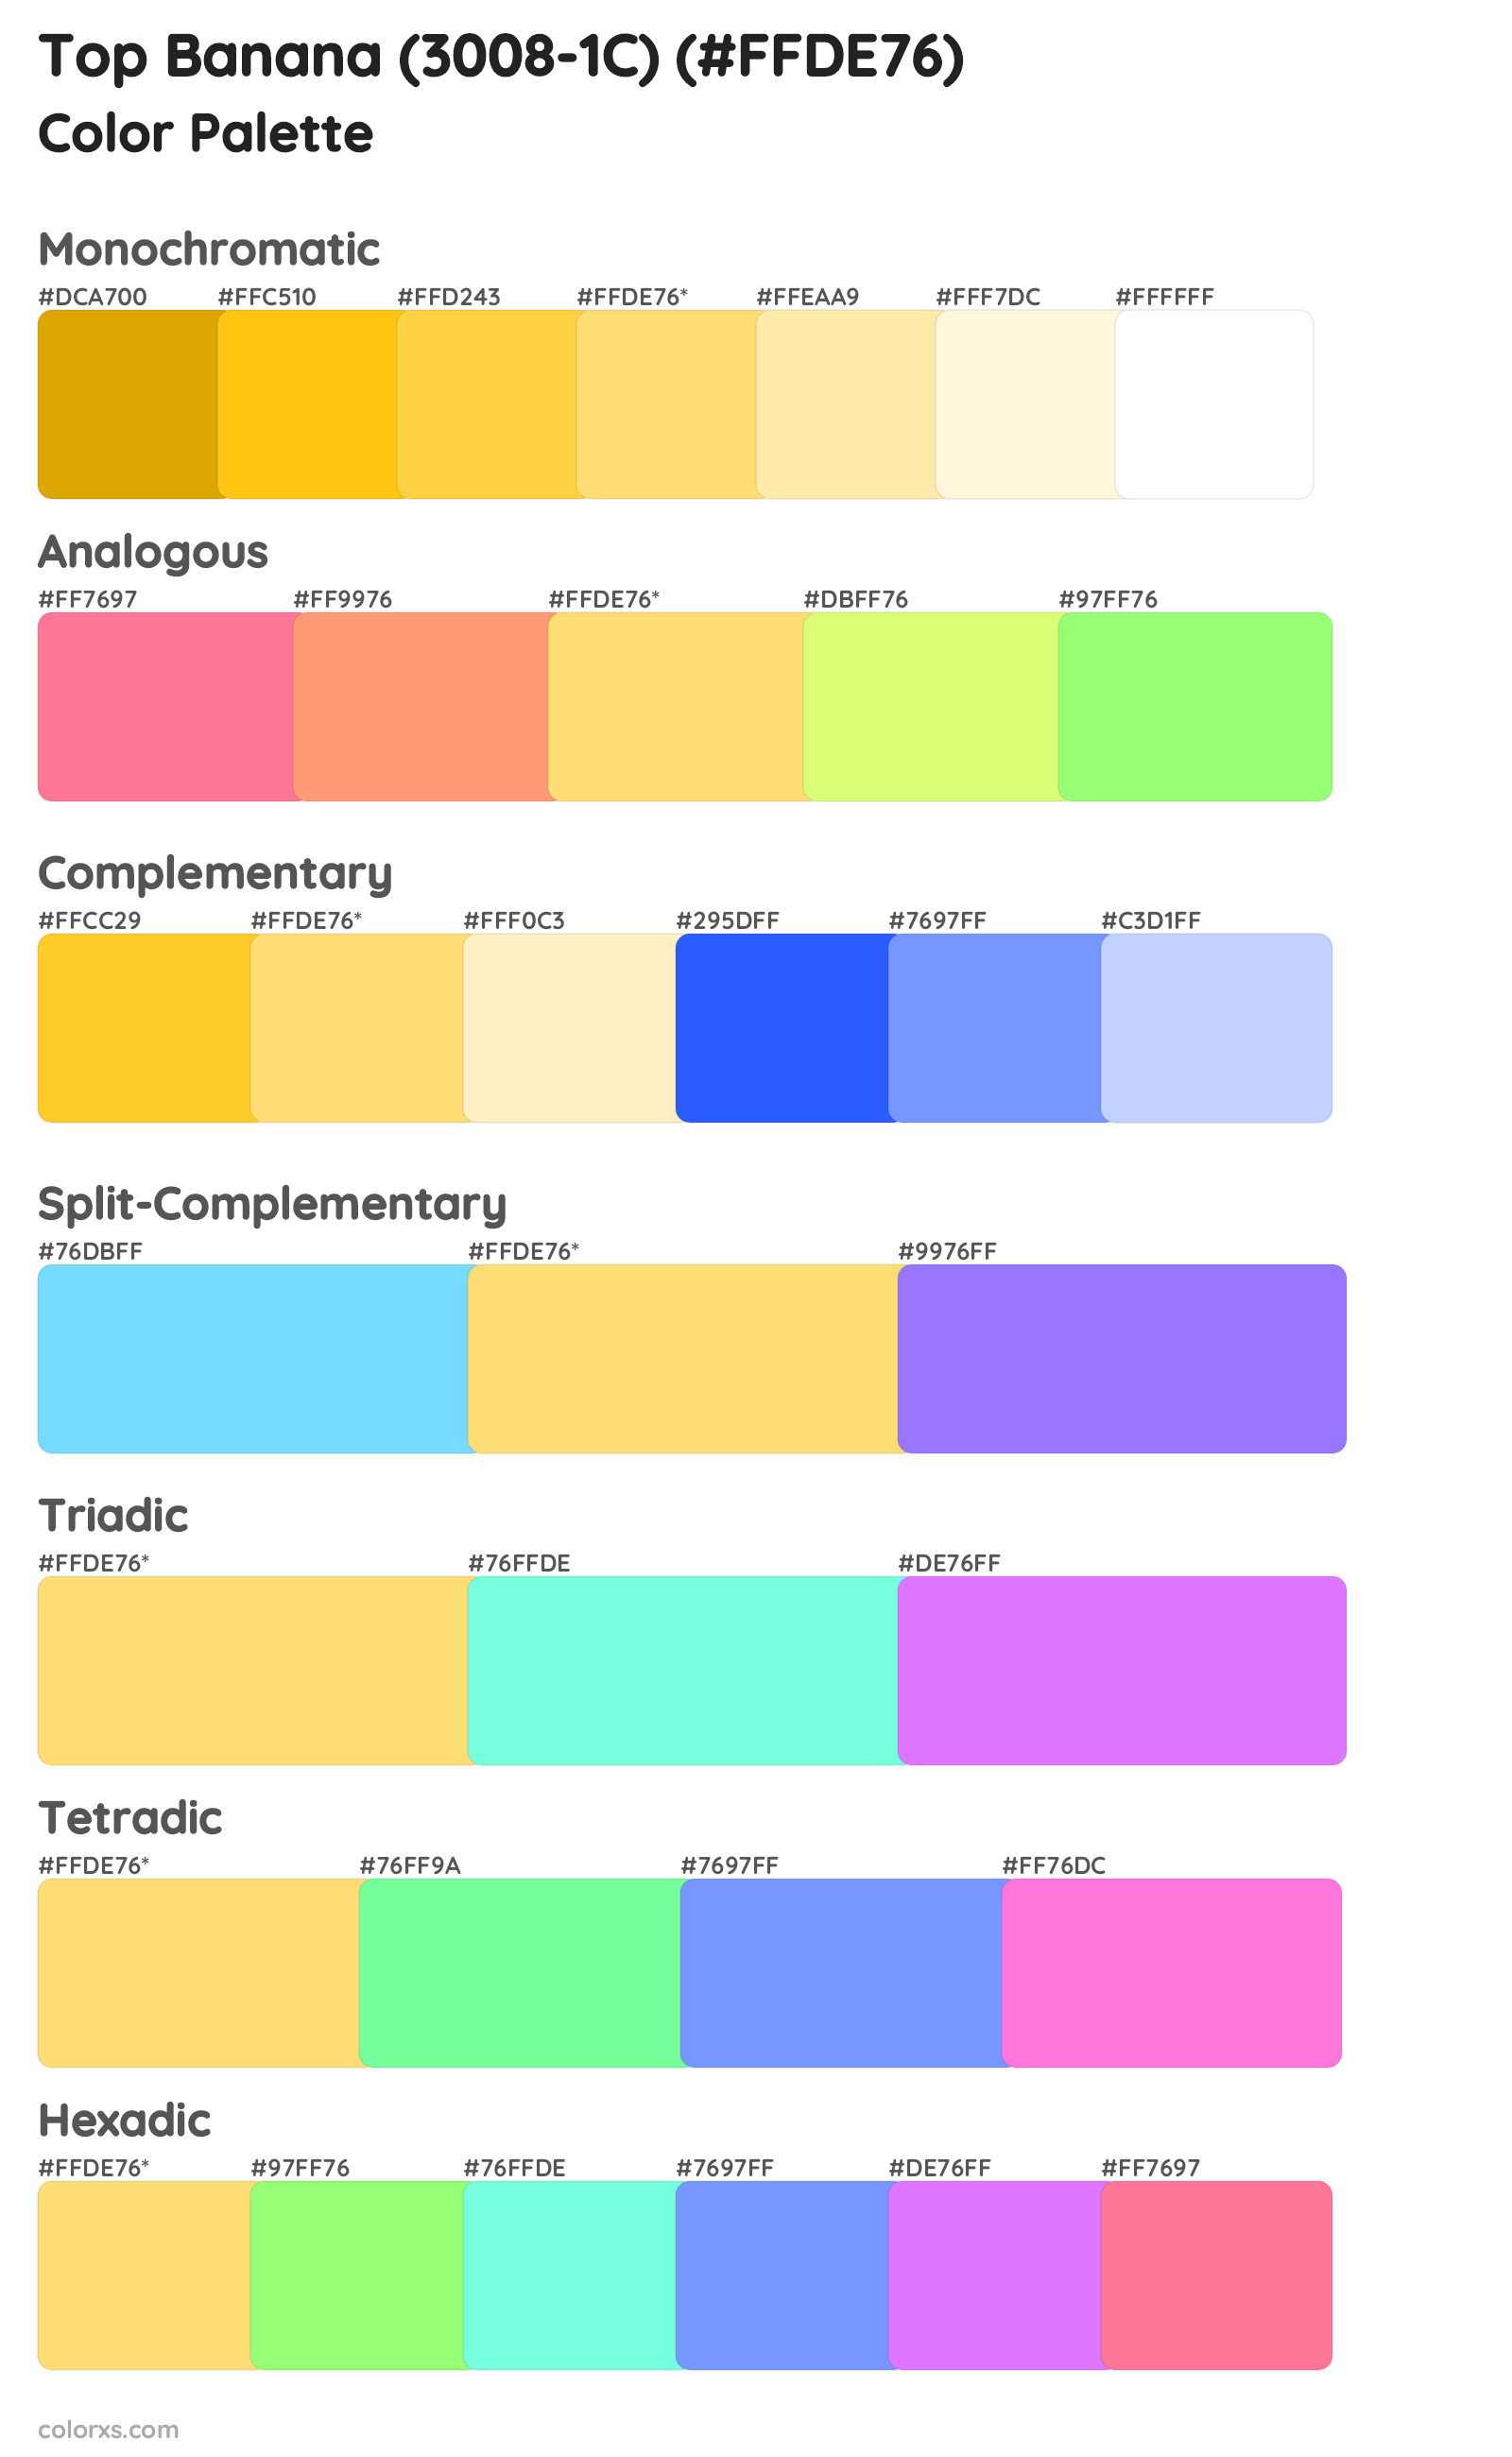 Top Banana (3008-1C) Color Scheme Palettes